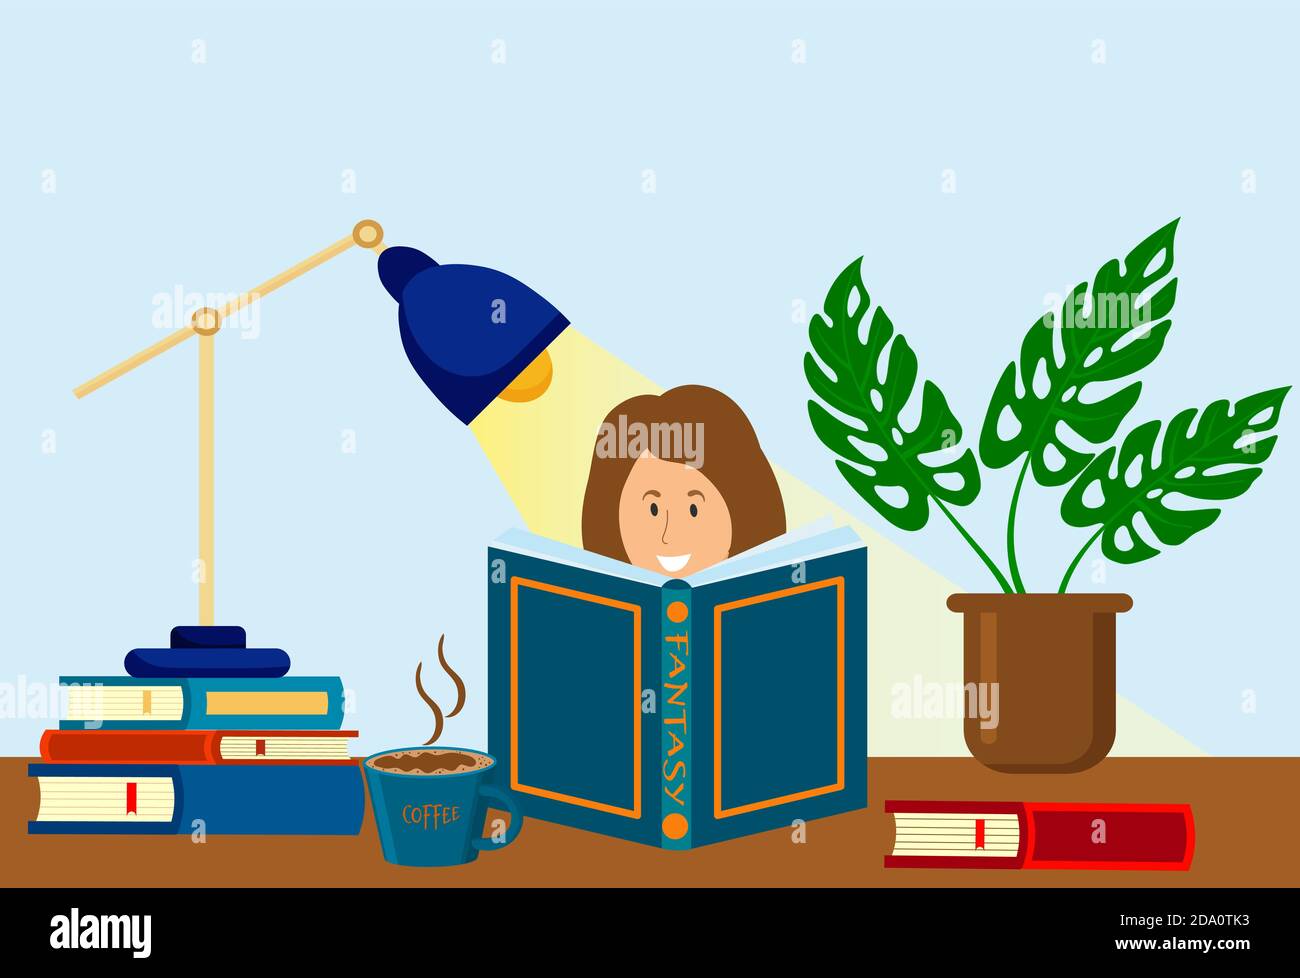 La donna sta leggendo il libro, vicino alla pila dei libri, la pianta della casa, il cofanetto e la lampada della tabella. Conoscenza, educazione, studio del concetto. Immagine piatta vettoriale. Illustrazione Vettoriale